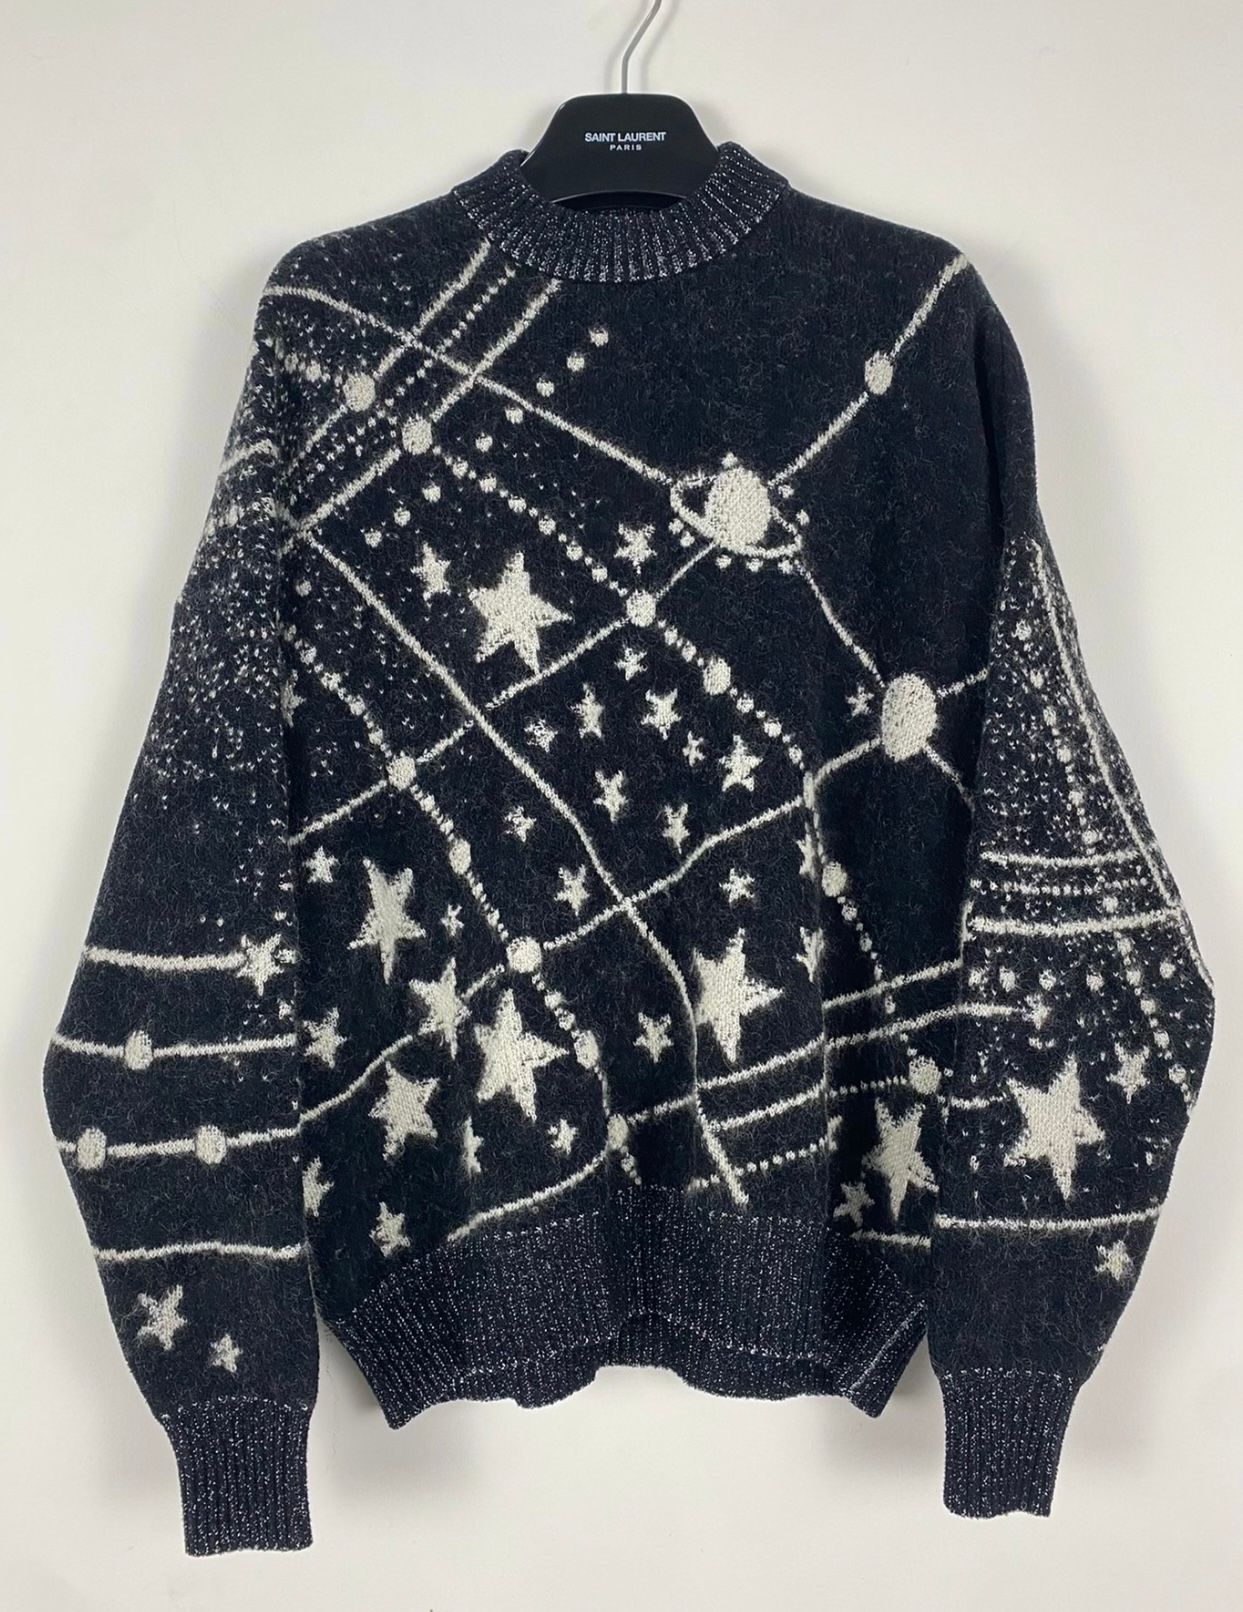 Saint Laurent Paris Starry sky sweater - 1